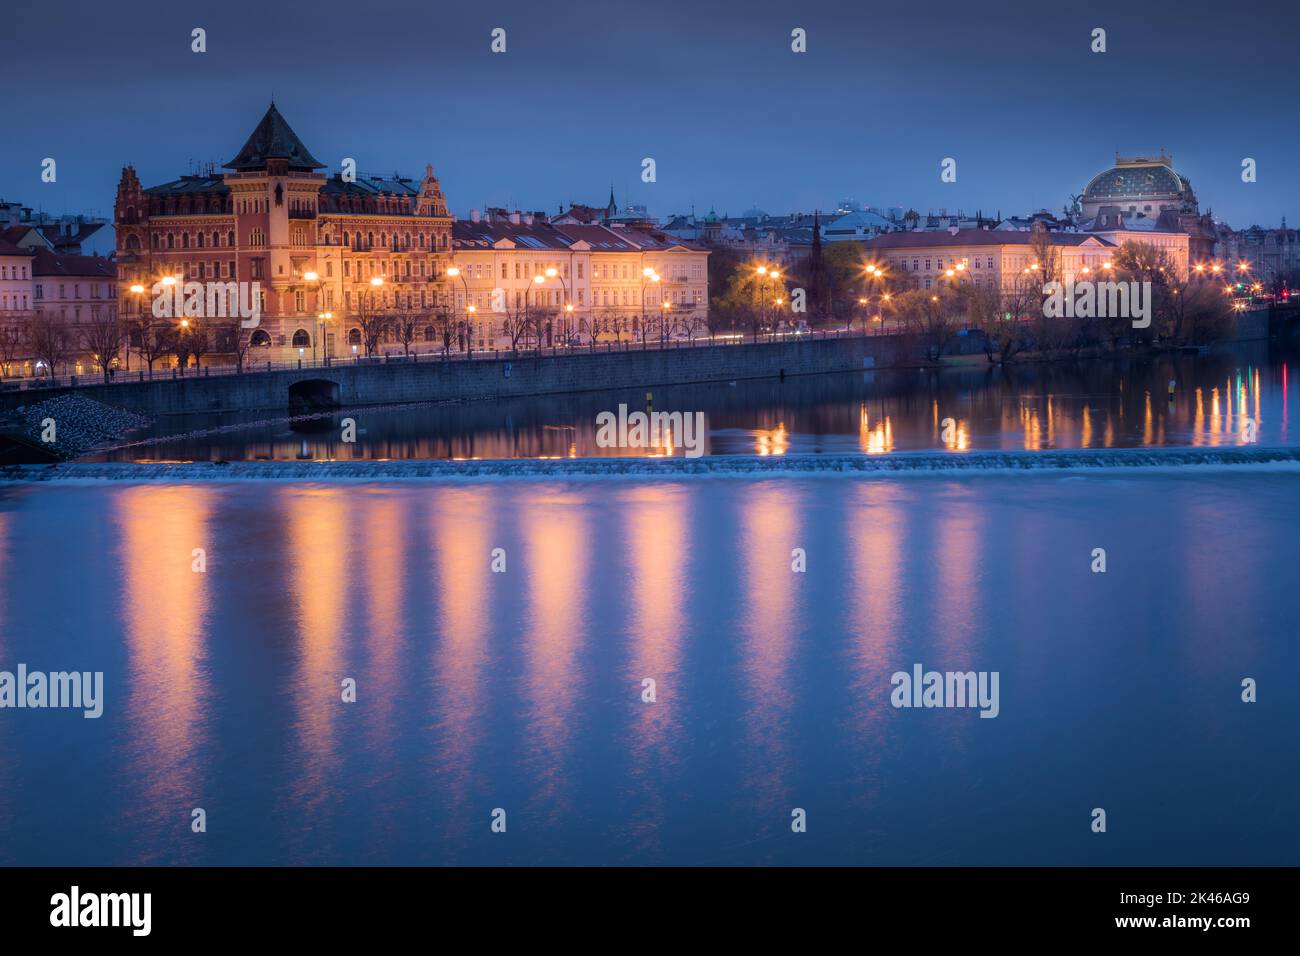 La città vecchia di Praga e il fiume Moldava illuminati all'alba silenziosa, Repubblica Ceca Foto Stock